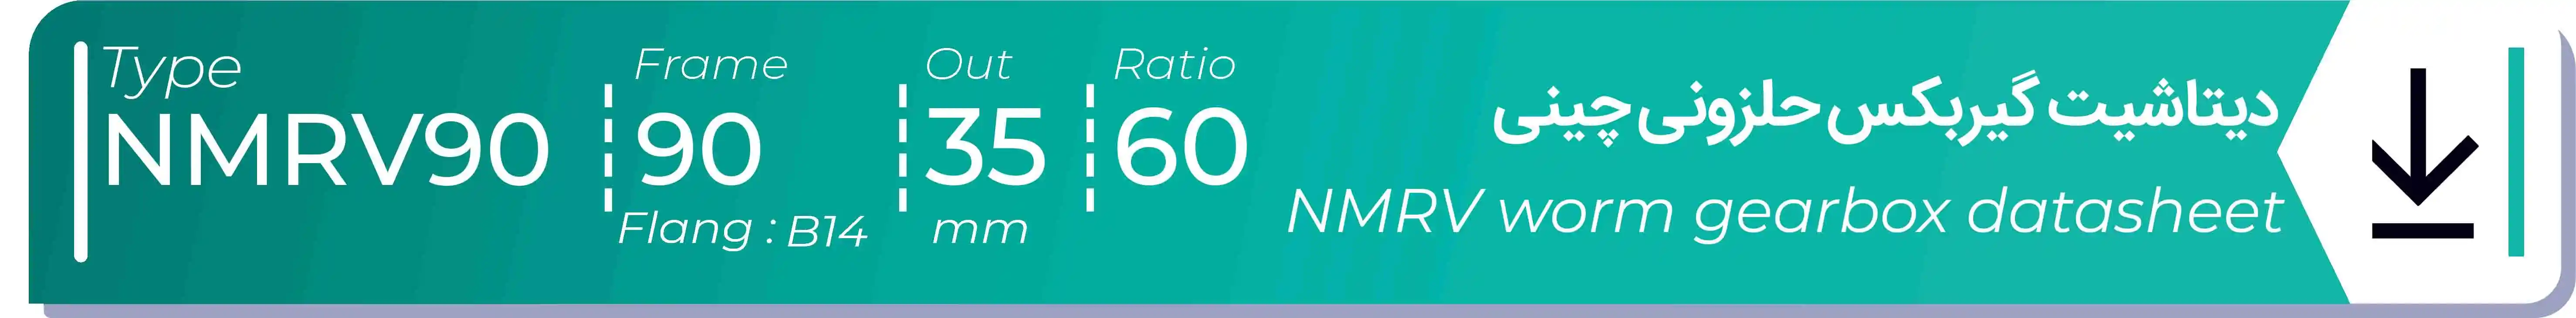  دیتاشیت و مشخصات فنی گیربکس حلزونی چینی   NMRV90  -  با خروجی 35- میلی متر و نسبت60 و فریم 90